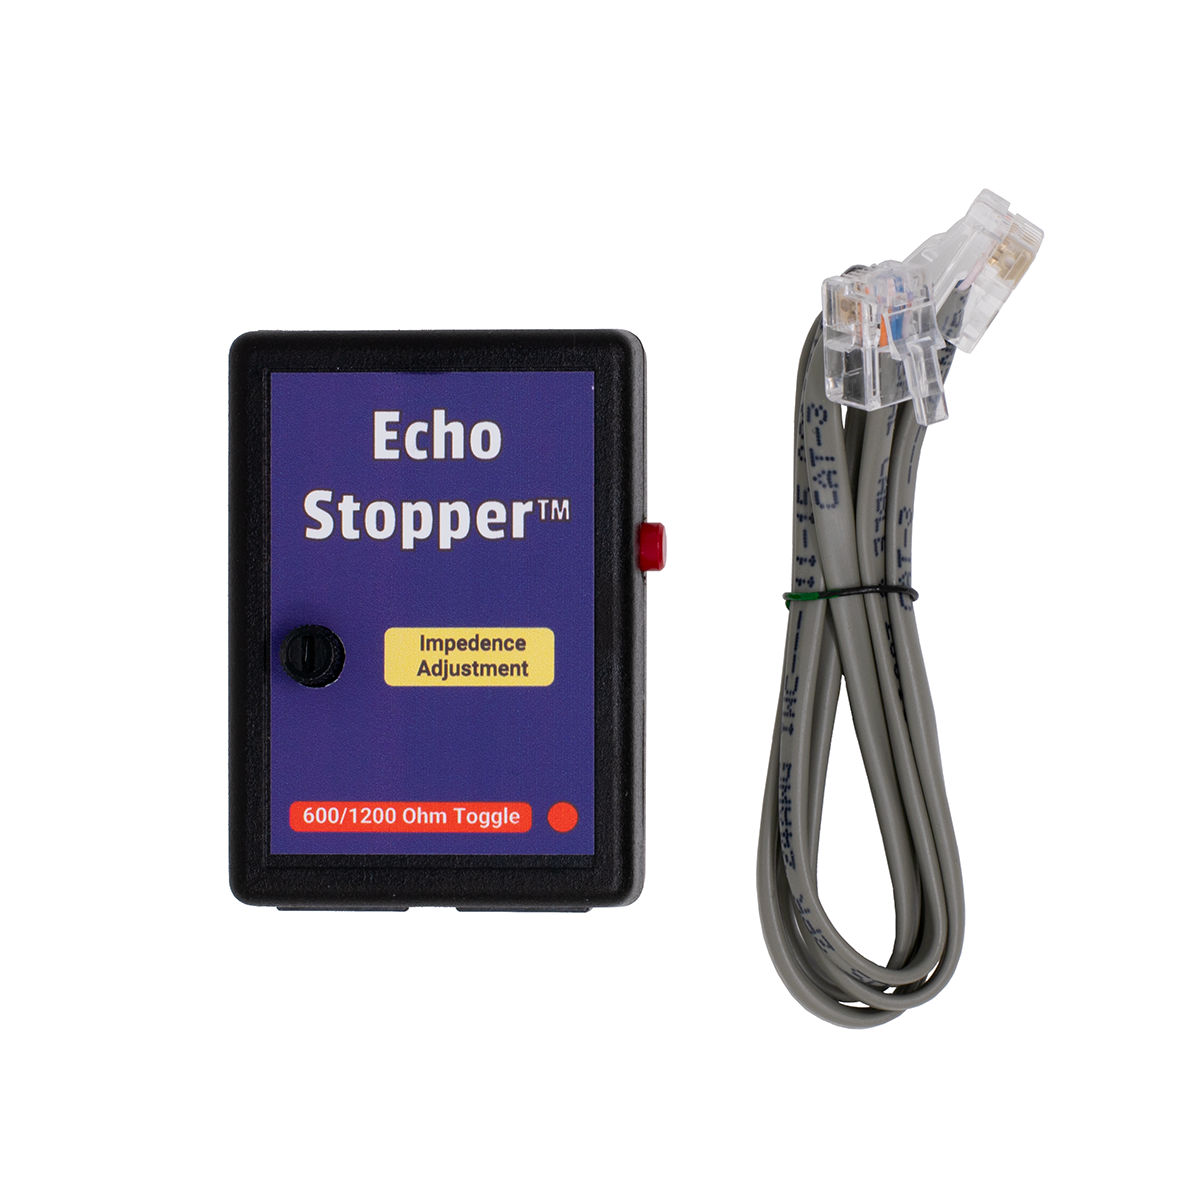 Echo Stopper w/Cord (Top View)